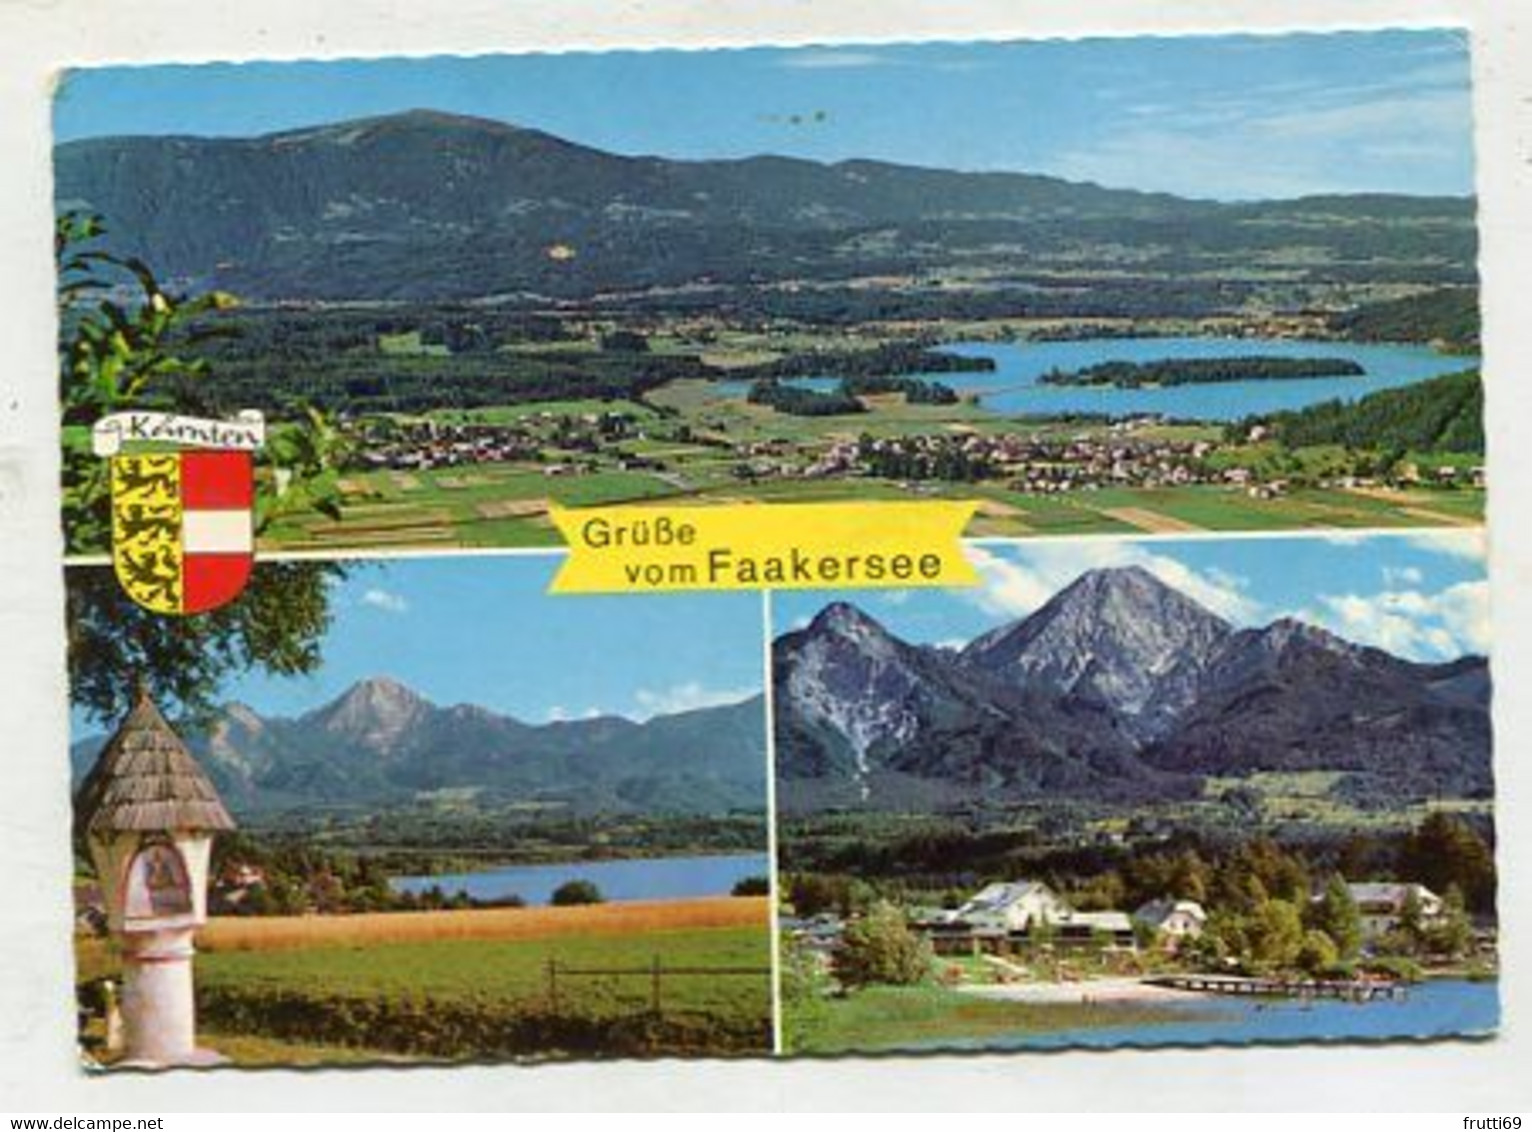 AK 103679 AUSTRIA - Faakersee - Faakersee-Orte